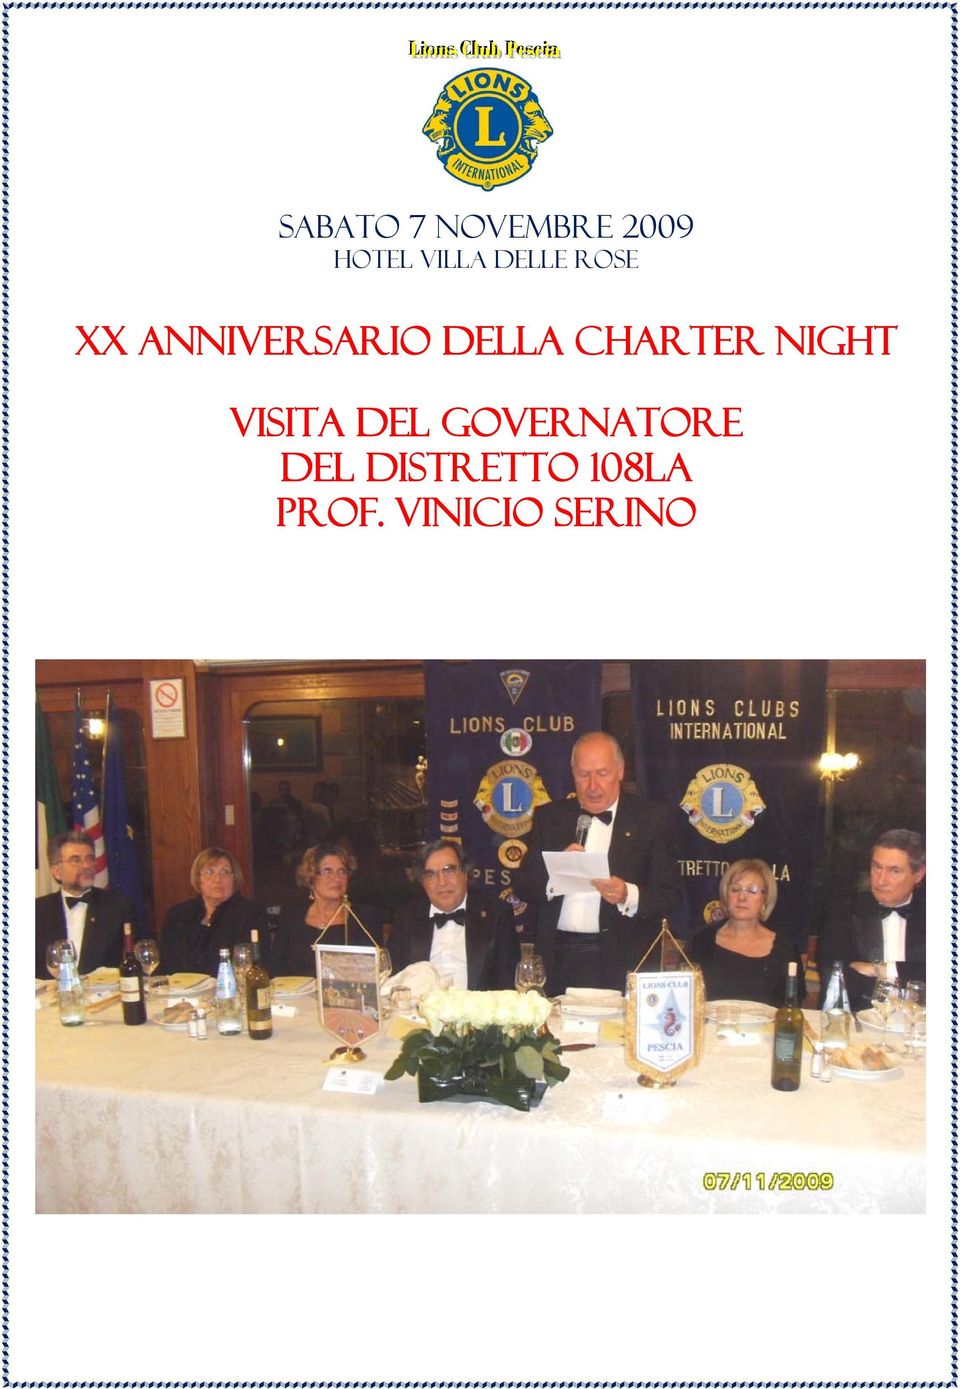 Charter Night Visita del Governatore